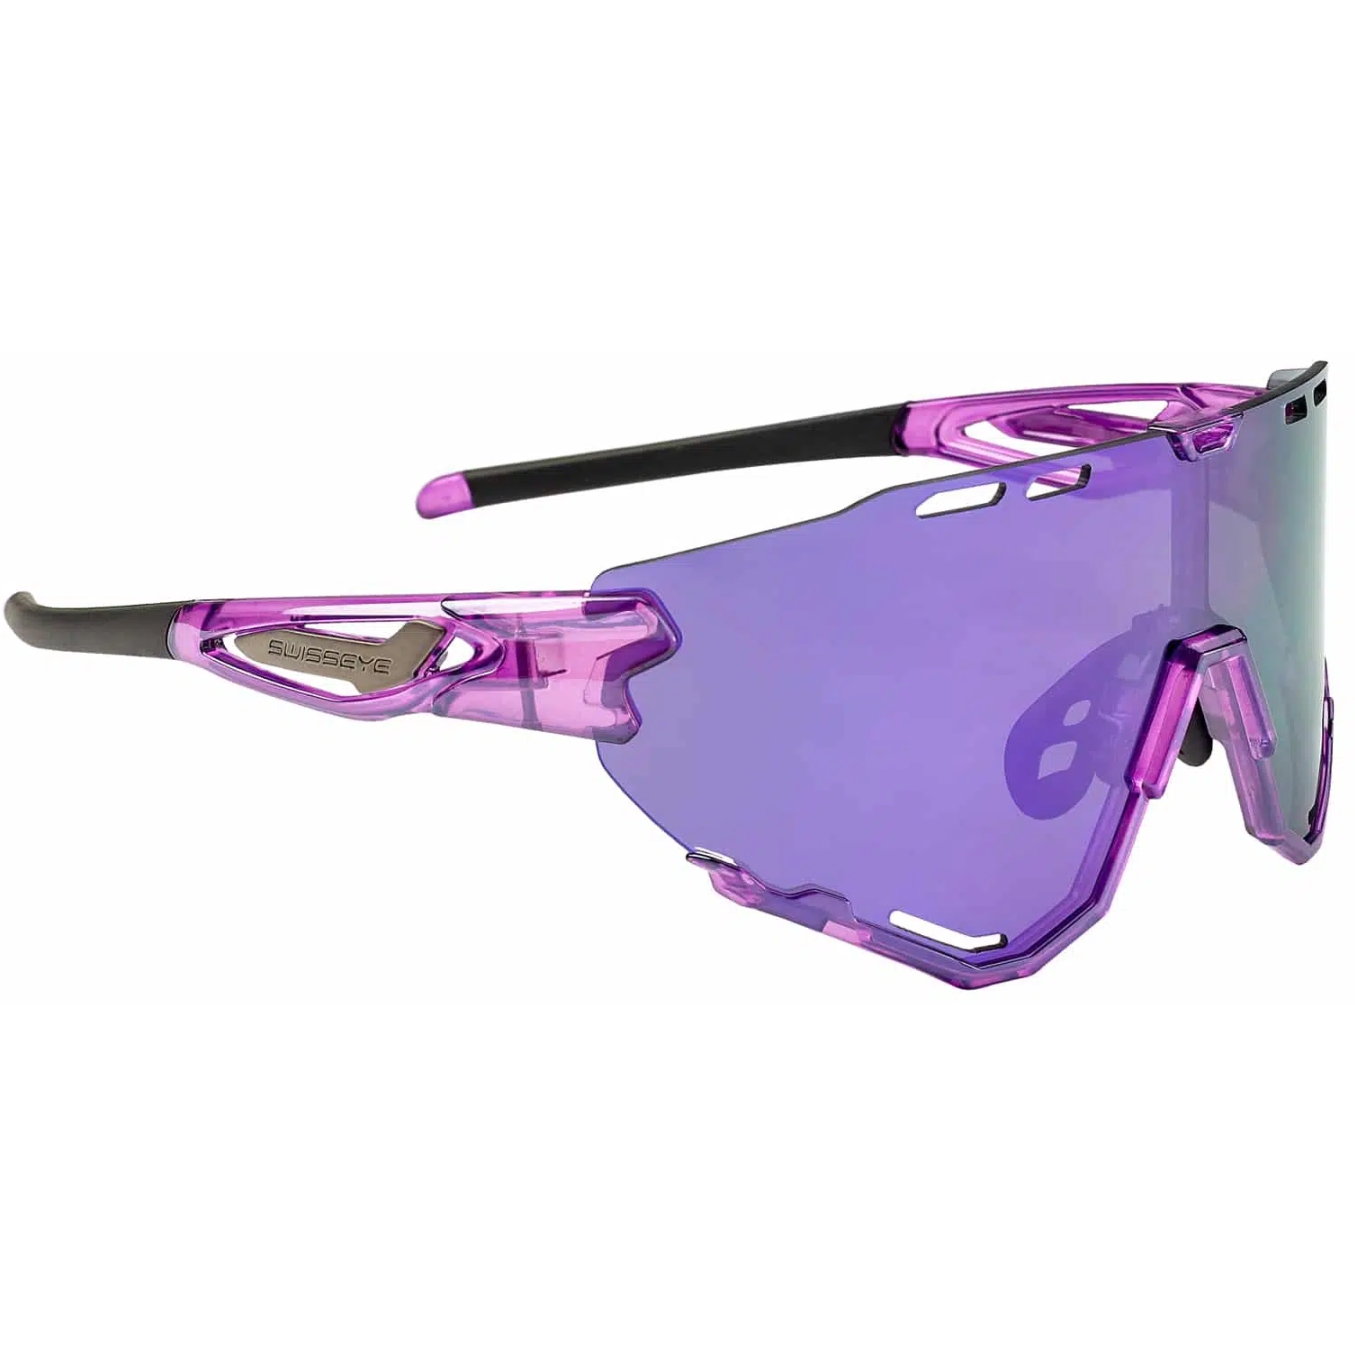 Produktbild von Swiss Eye Mantra Brille 13025 - Shiny Laser Purple - Smoke Purple Revo